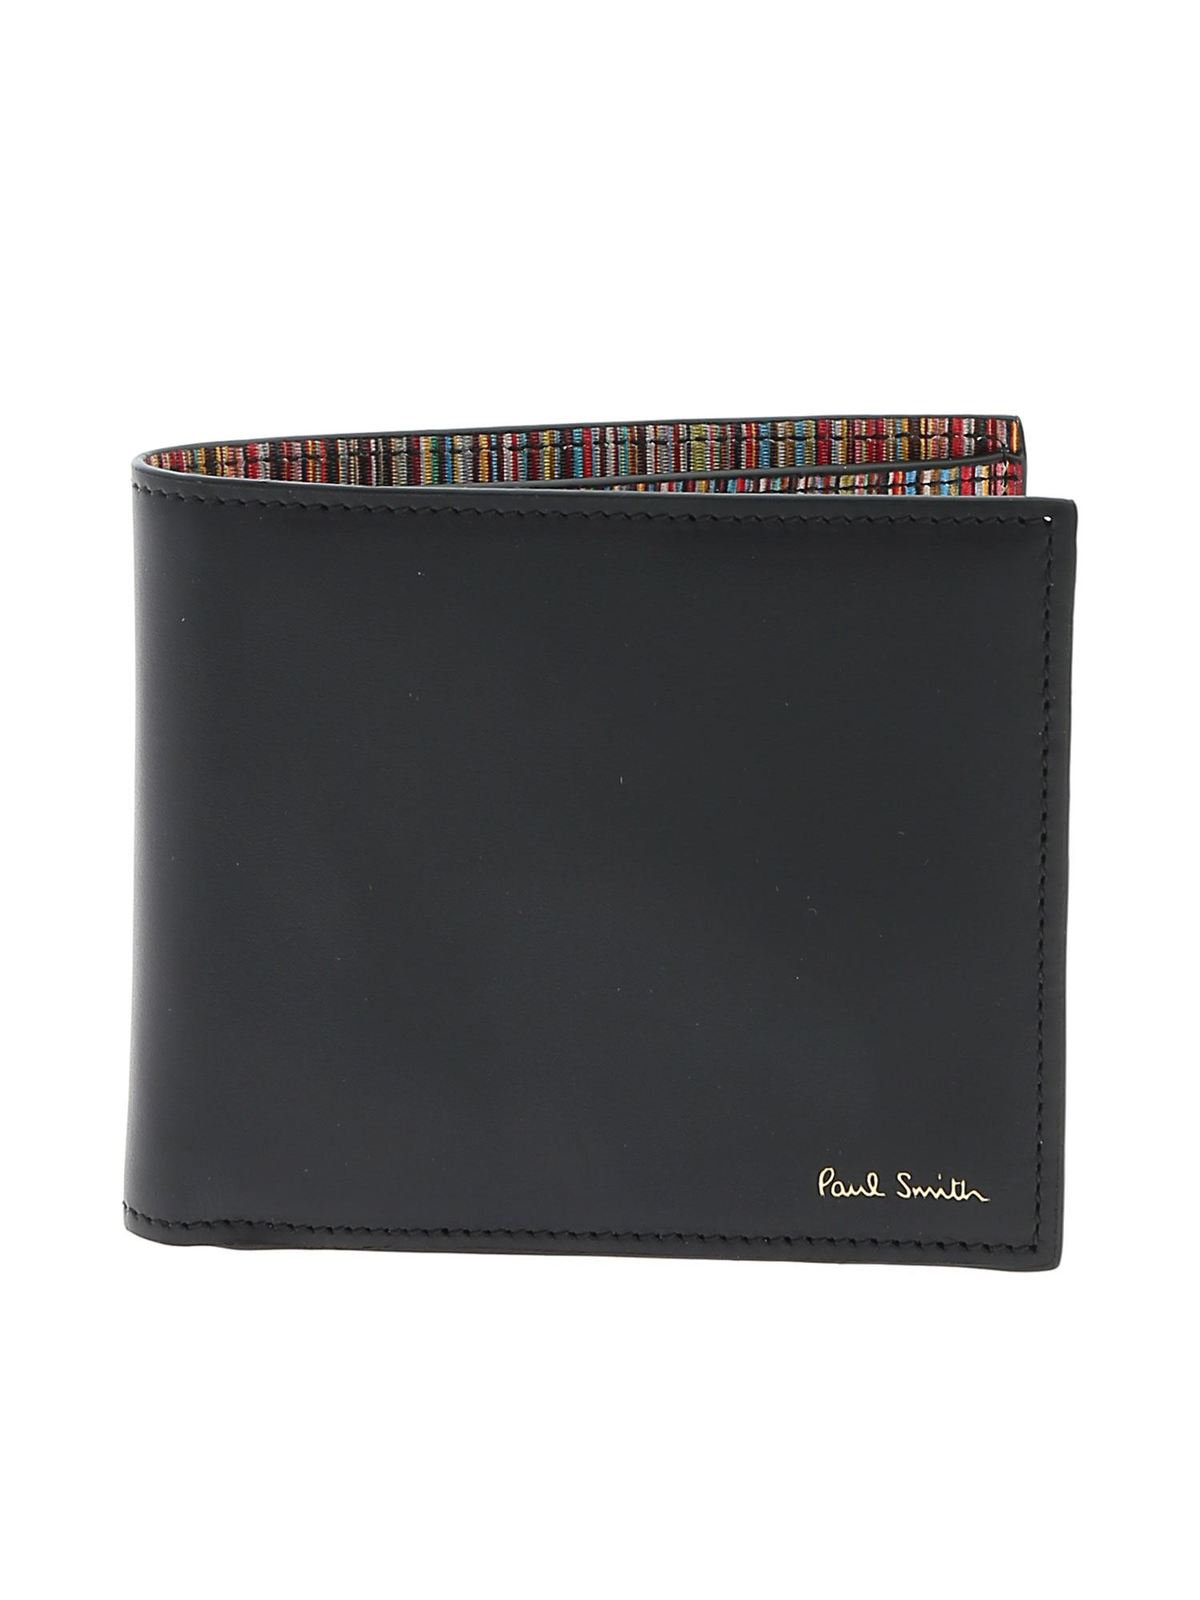 Paul Smith Logo Wallet In Black